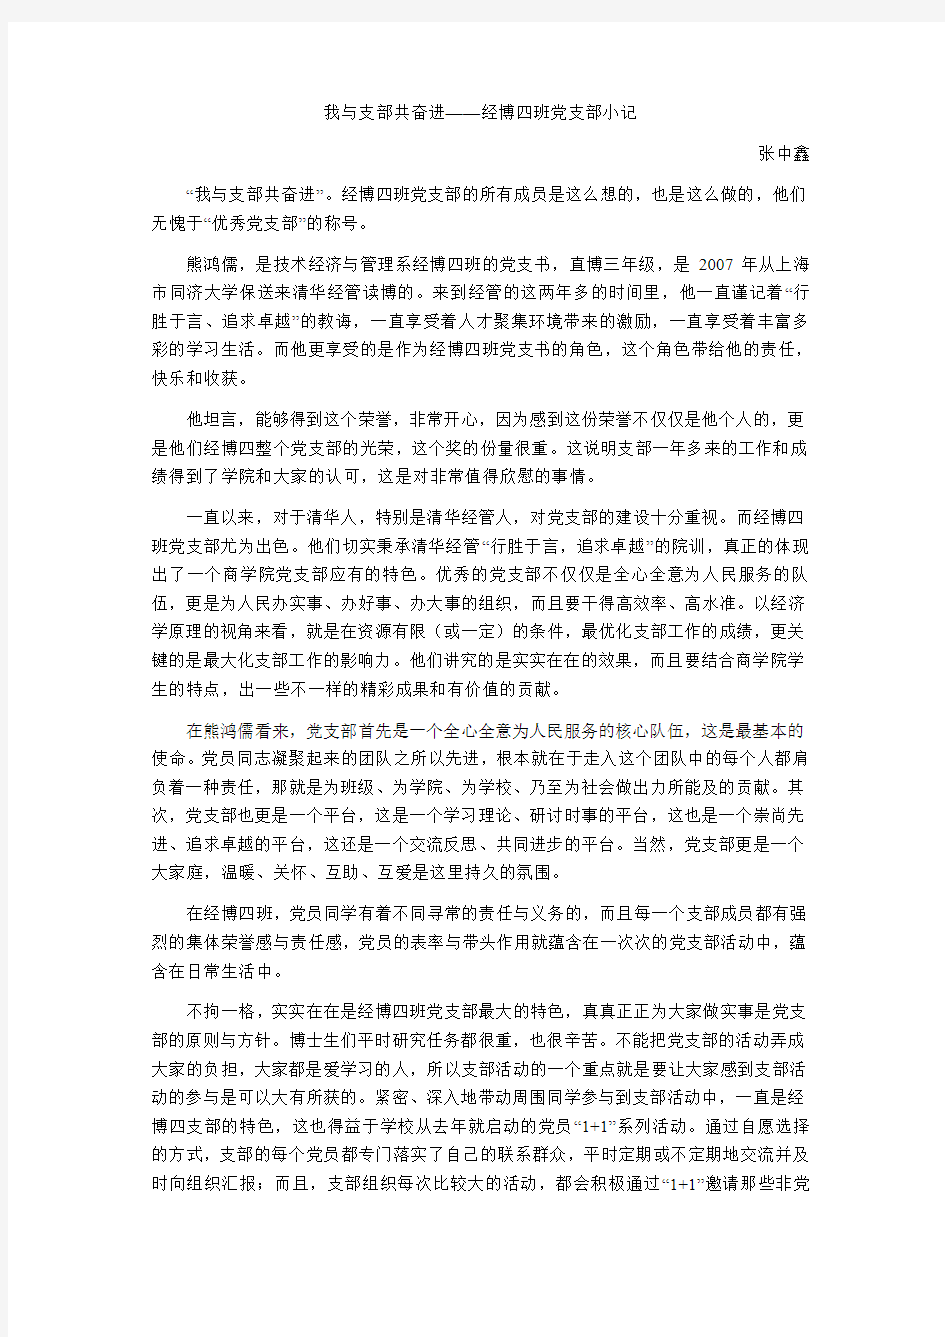 熊鸿儒-清华大学经济管理学院